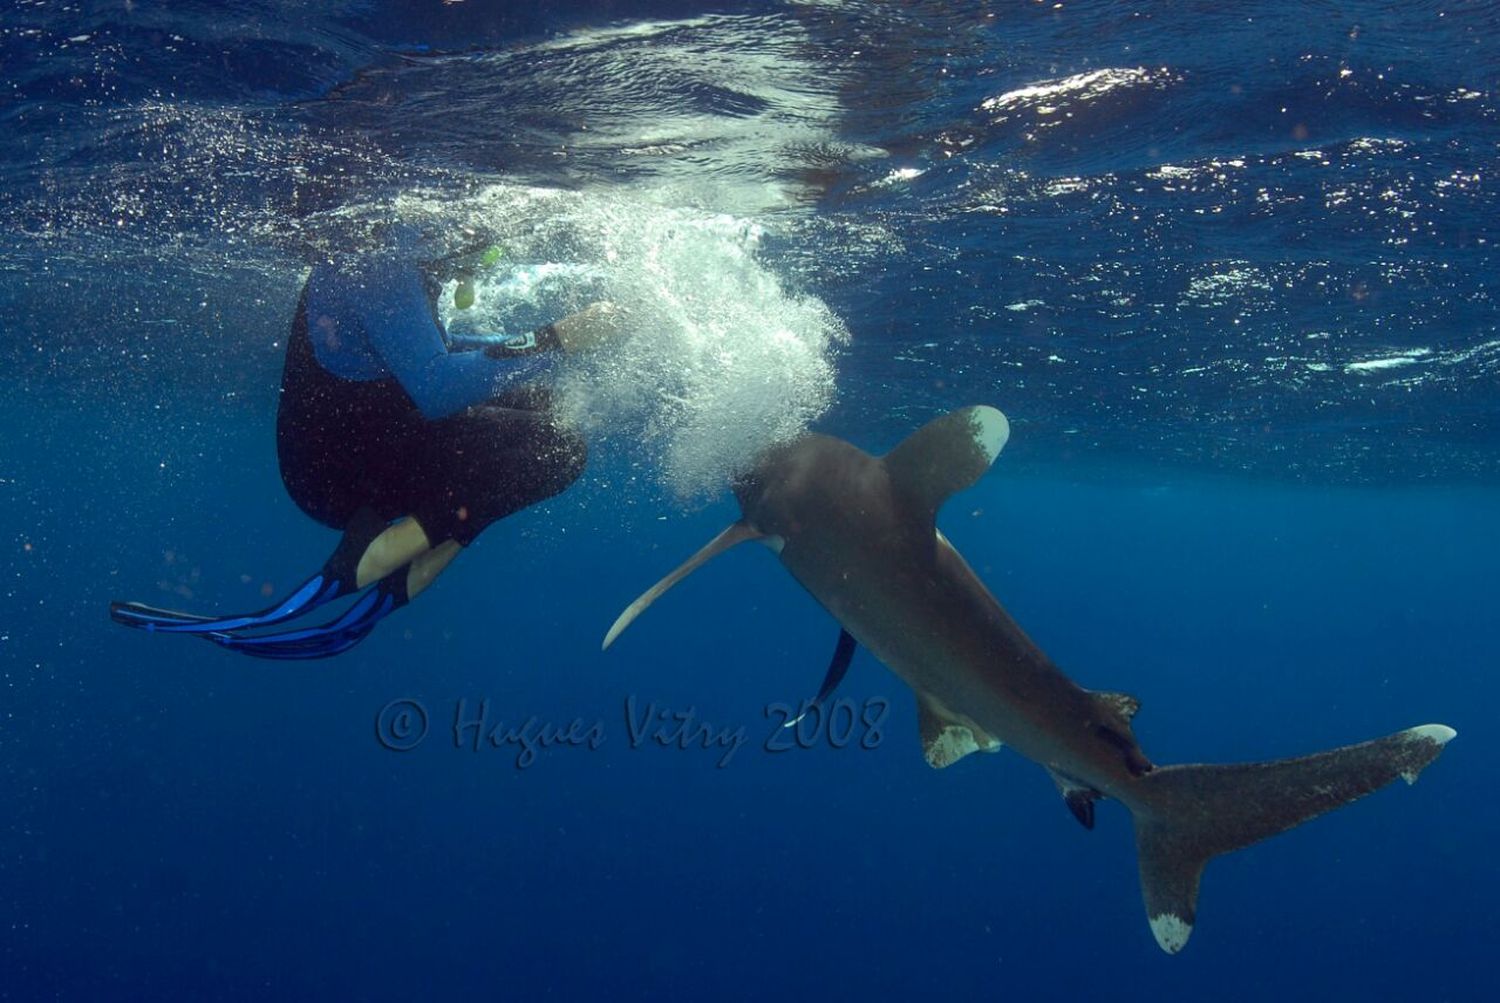 Une pirouette et un geste de la main permettent d’éloigner le requin, selon le plongeur. Attention tout de même, une mauvaise appréciation des distances et le plongeur peut se faire mordre la main. 